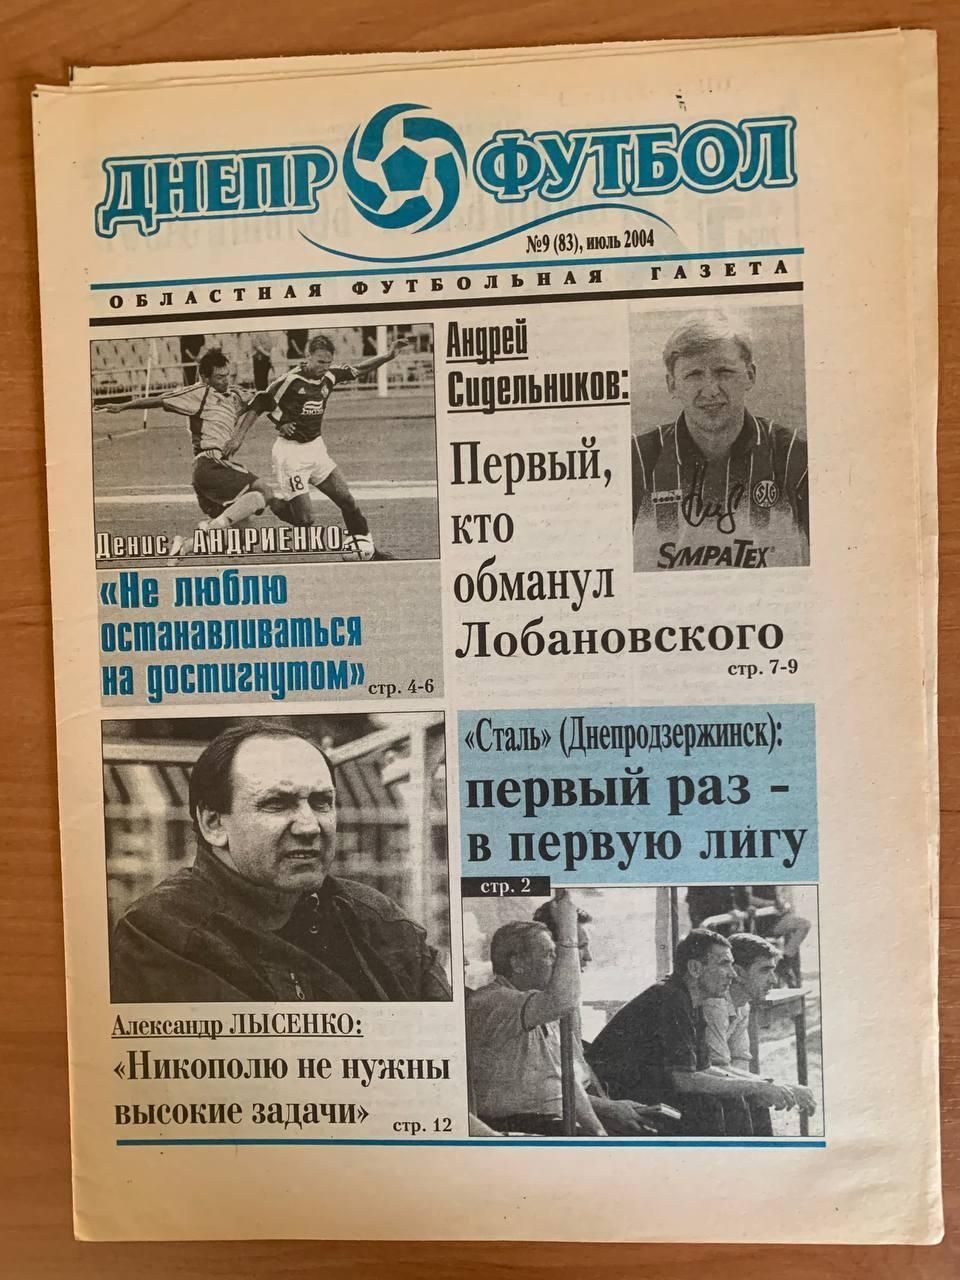 Областная футбольная газета Днепр - Футбол Июль 2004 (№83)